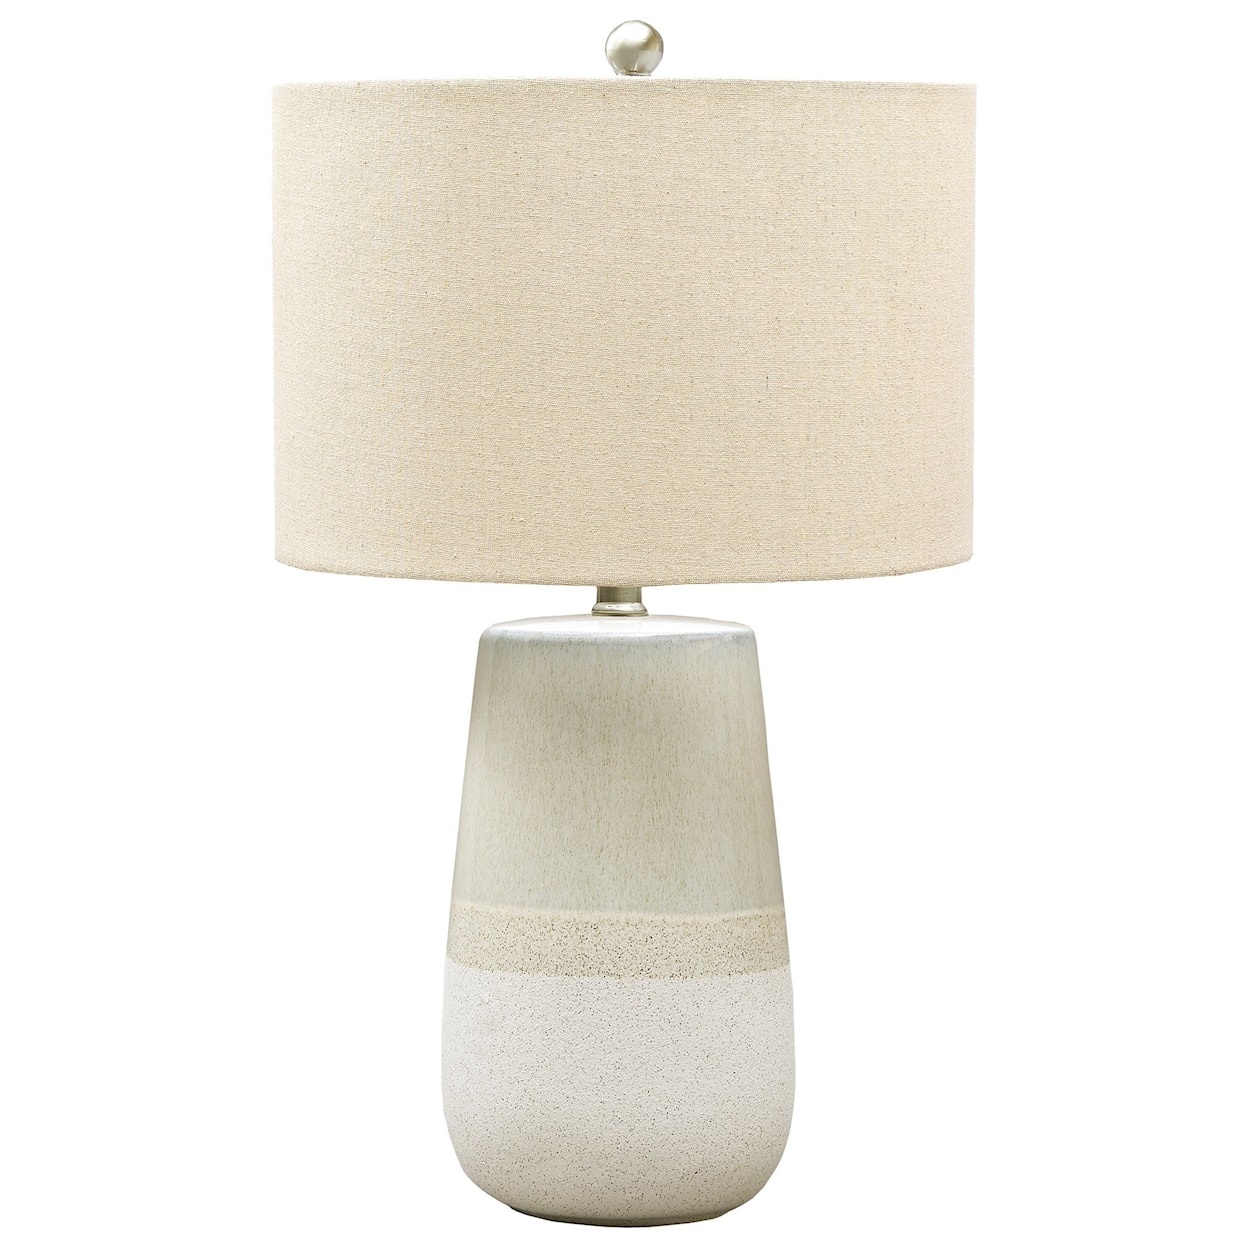 Signature Design Lamps - Casual Shavon Beige/White Ceramic Table Lamp